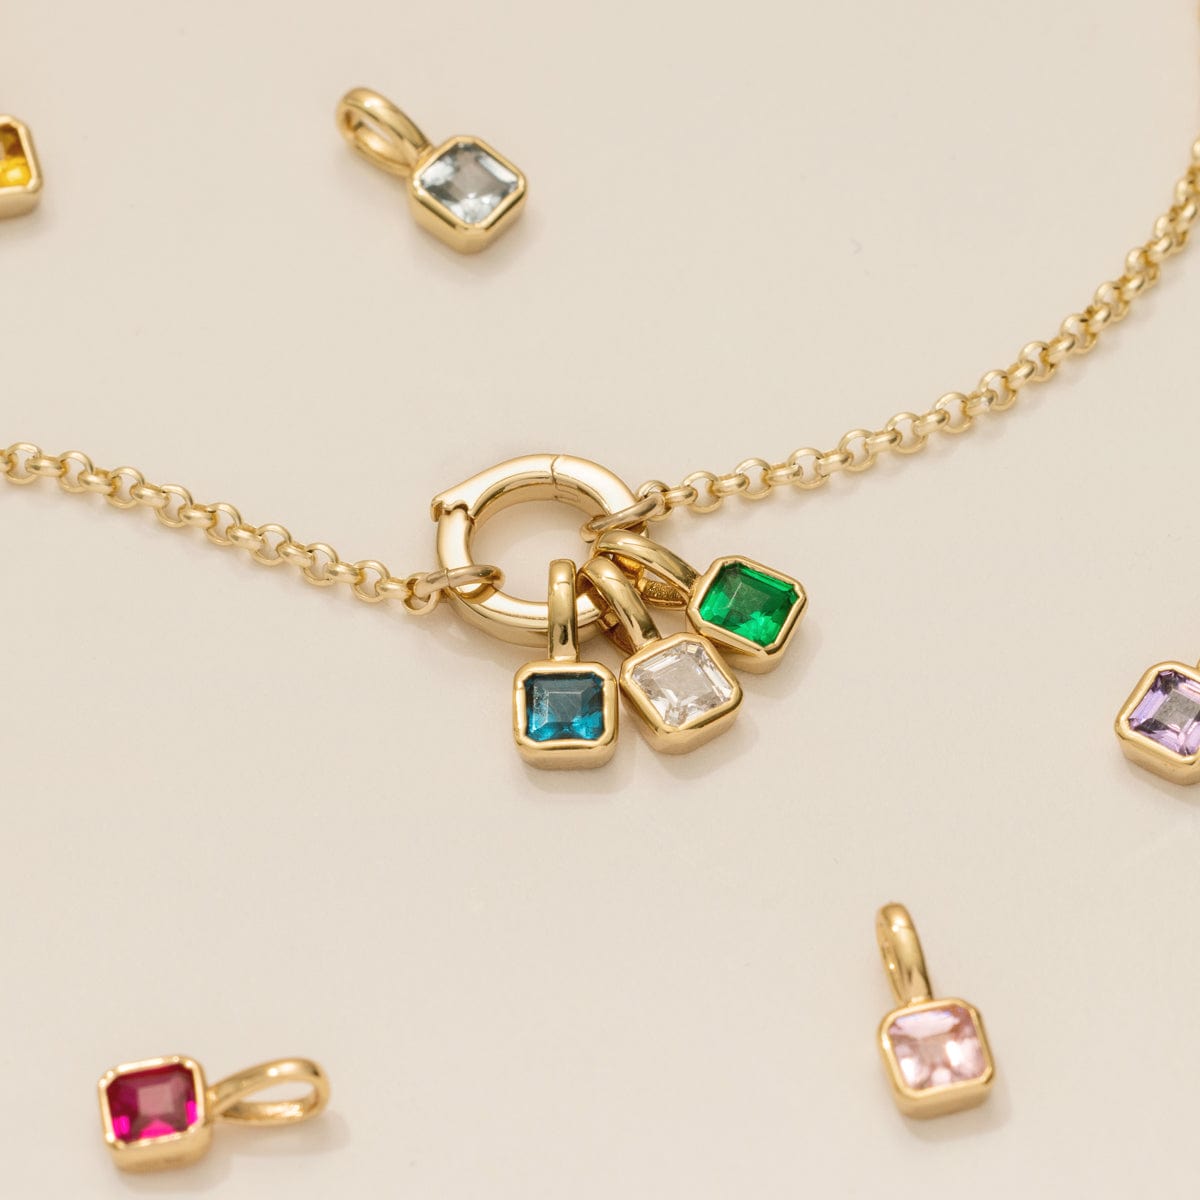 14K Gold Filled Tiny CZ Bracelet Charm Collection, 4 Style Options